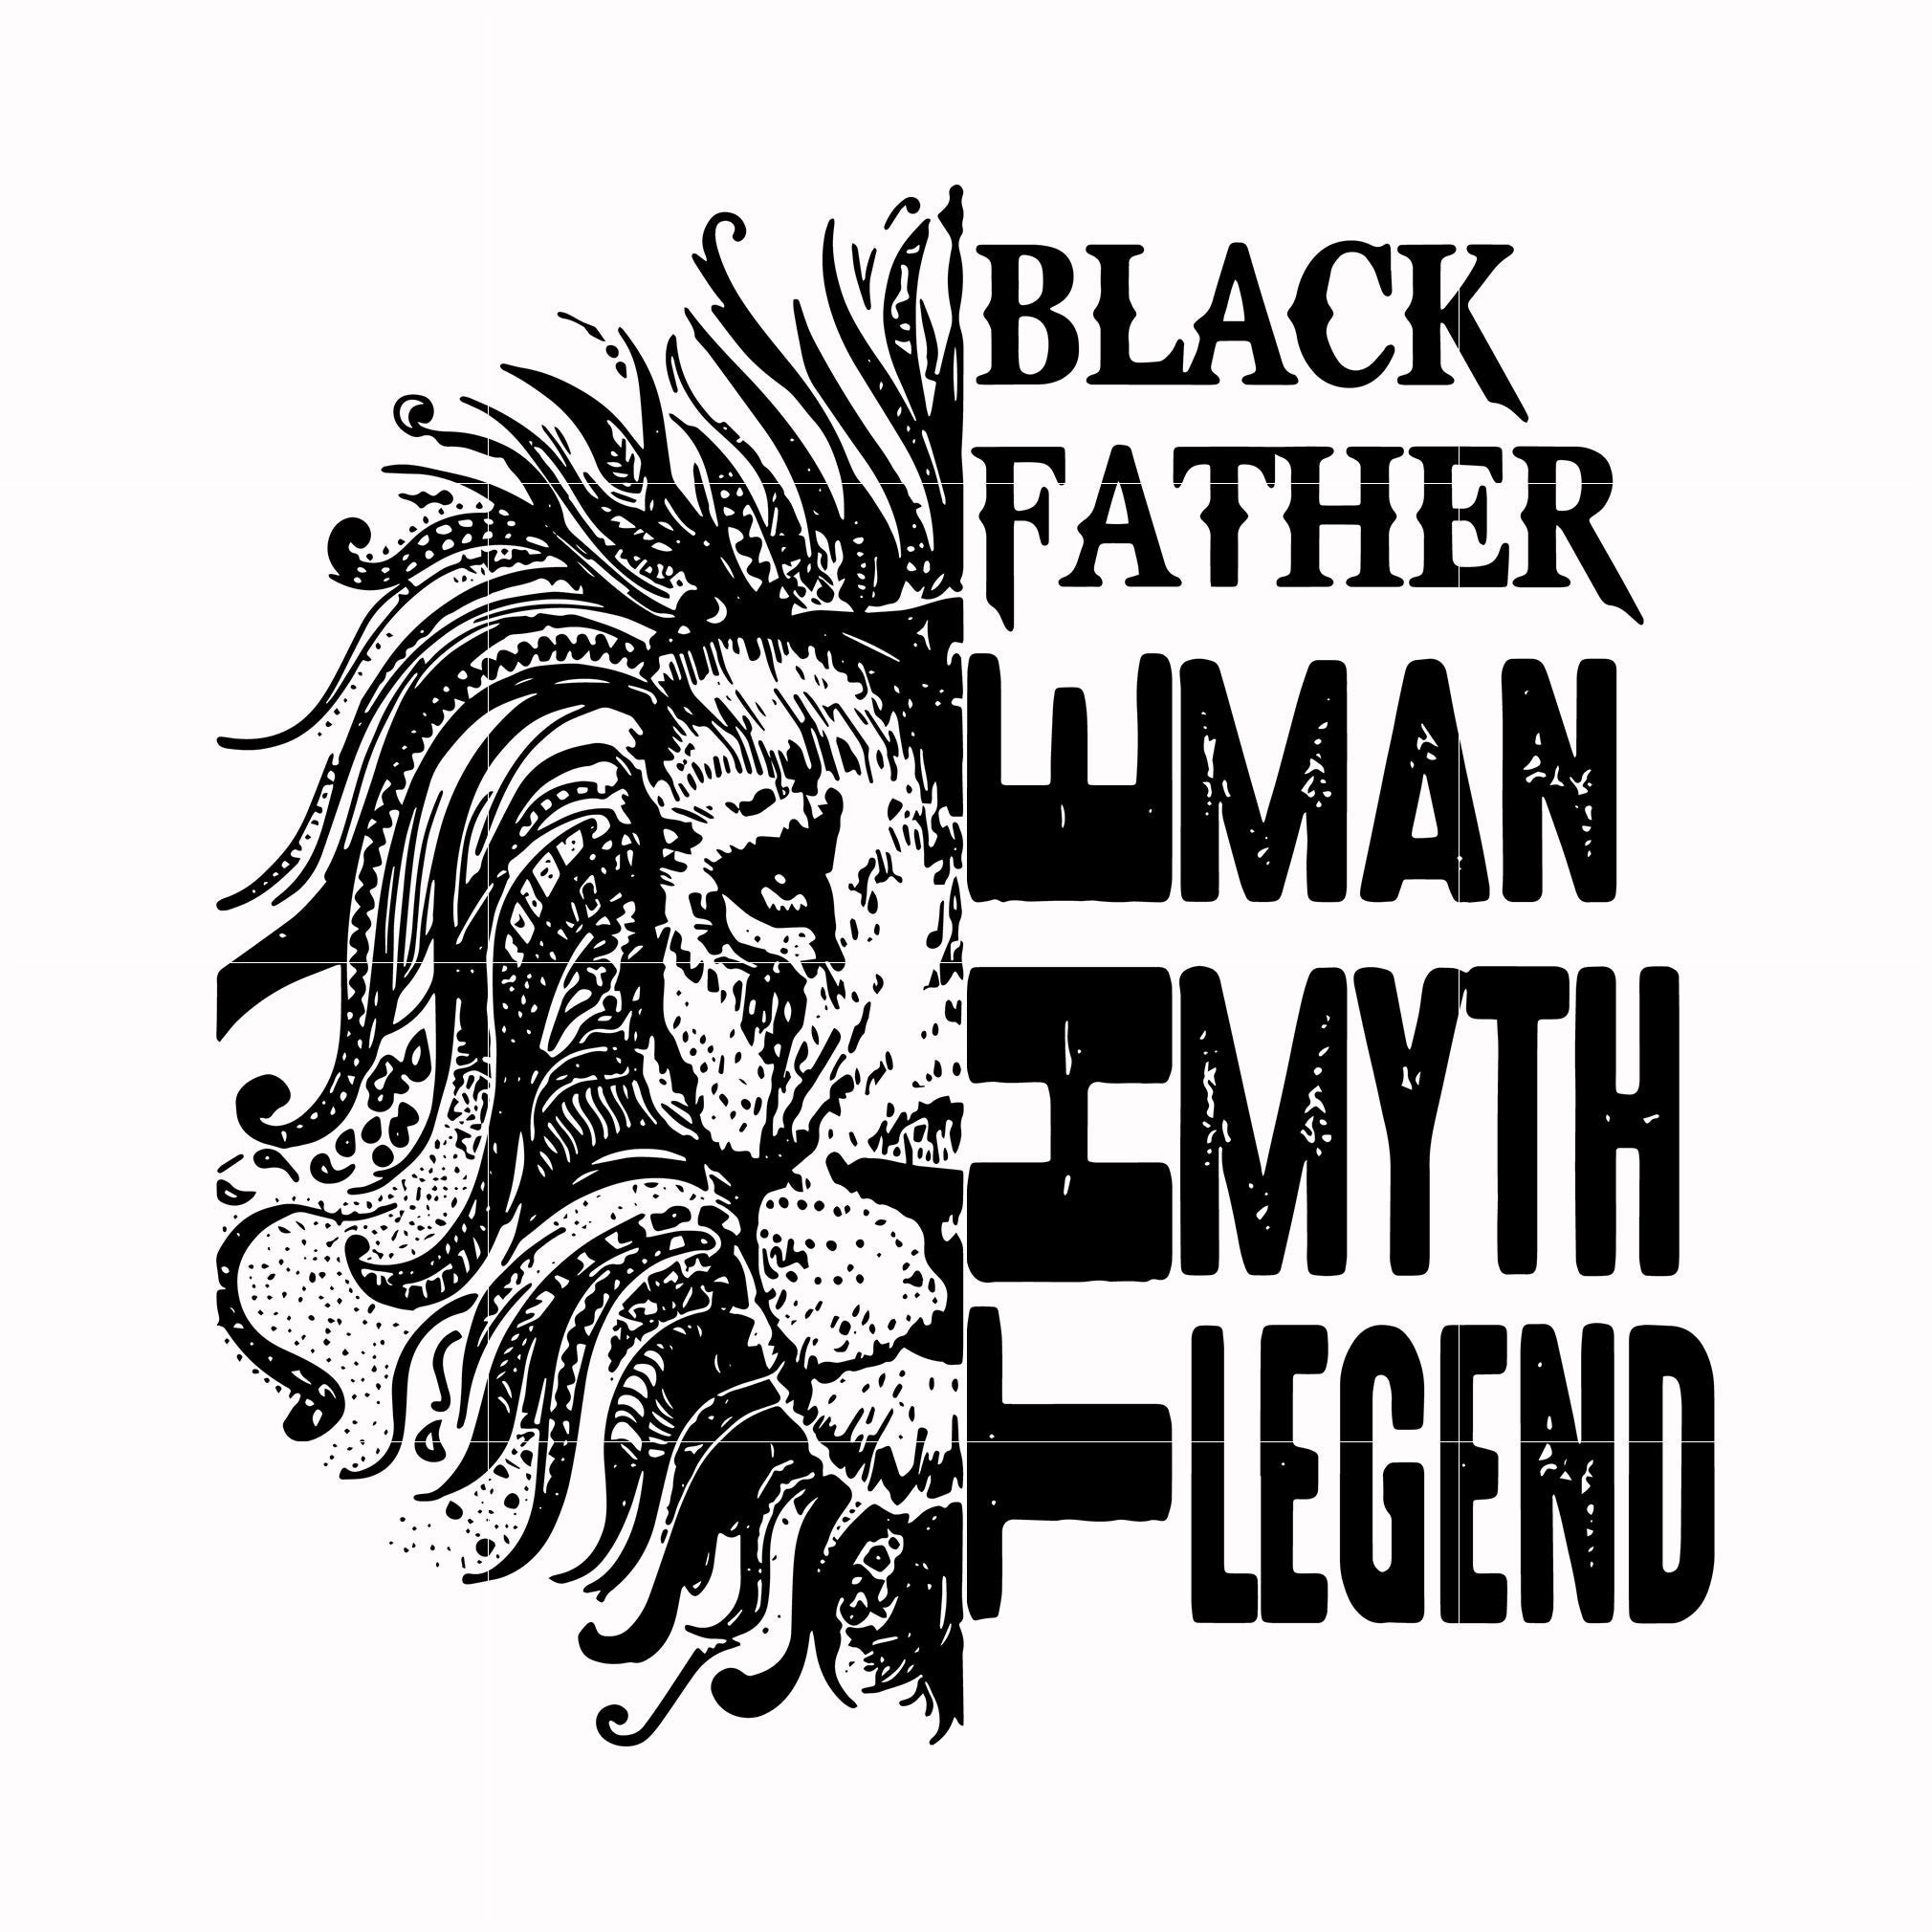 Black father the man myth legend svg, png, dxf, eps, digital file FTD49